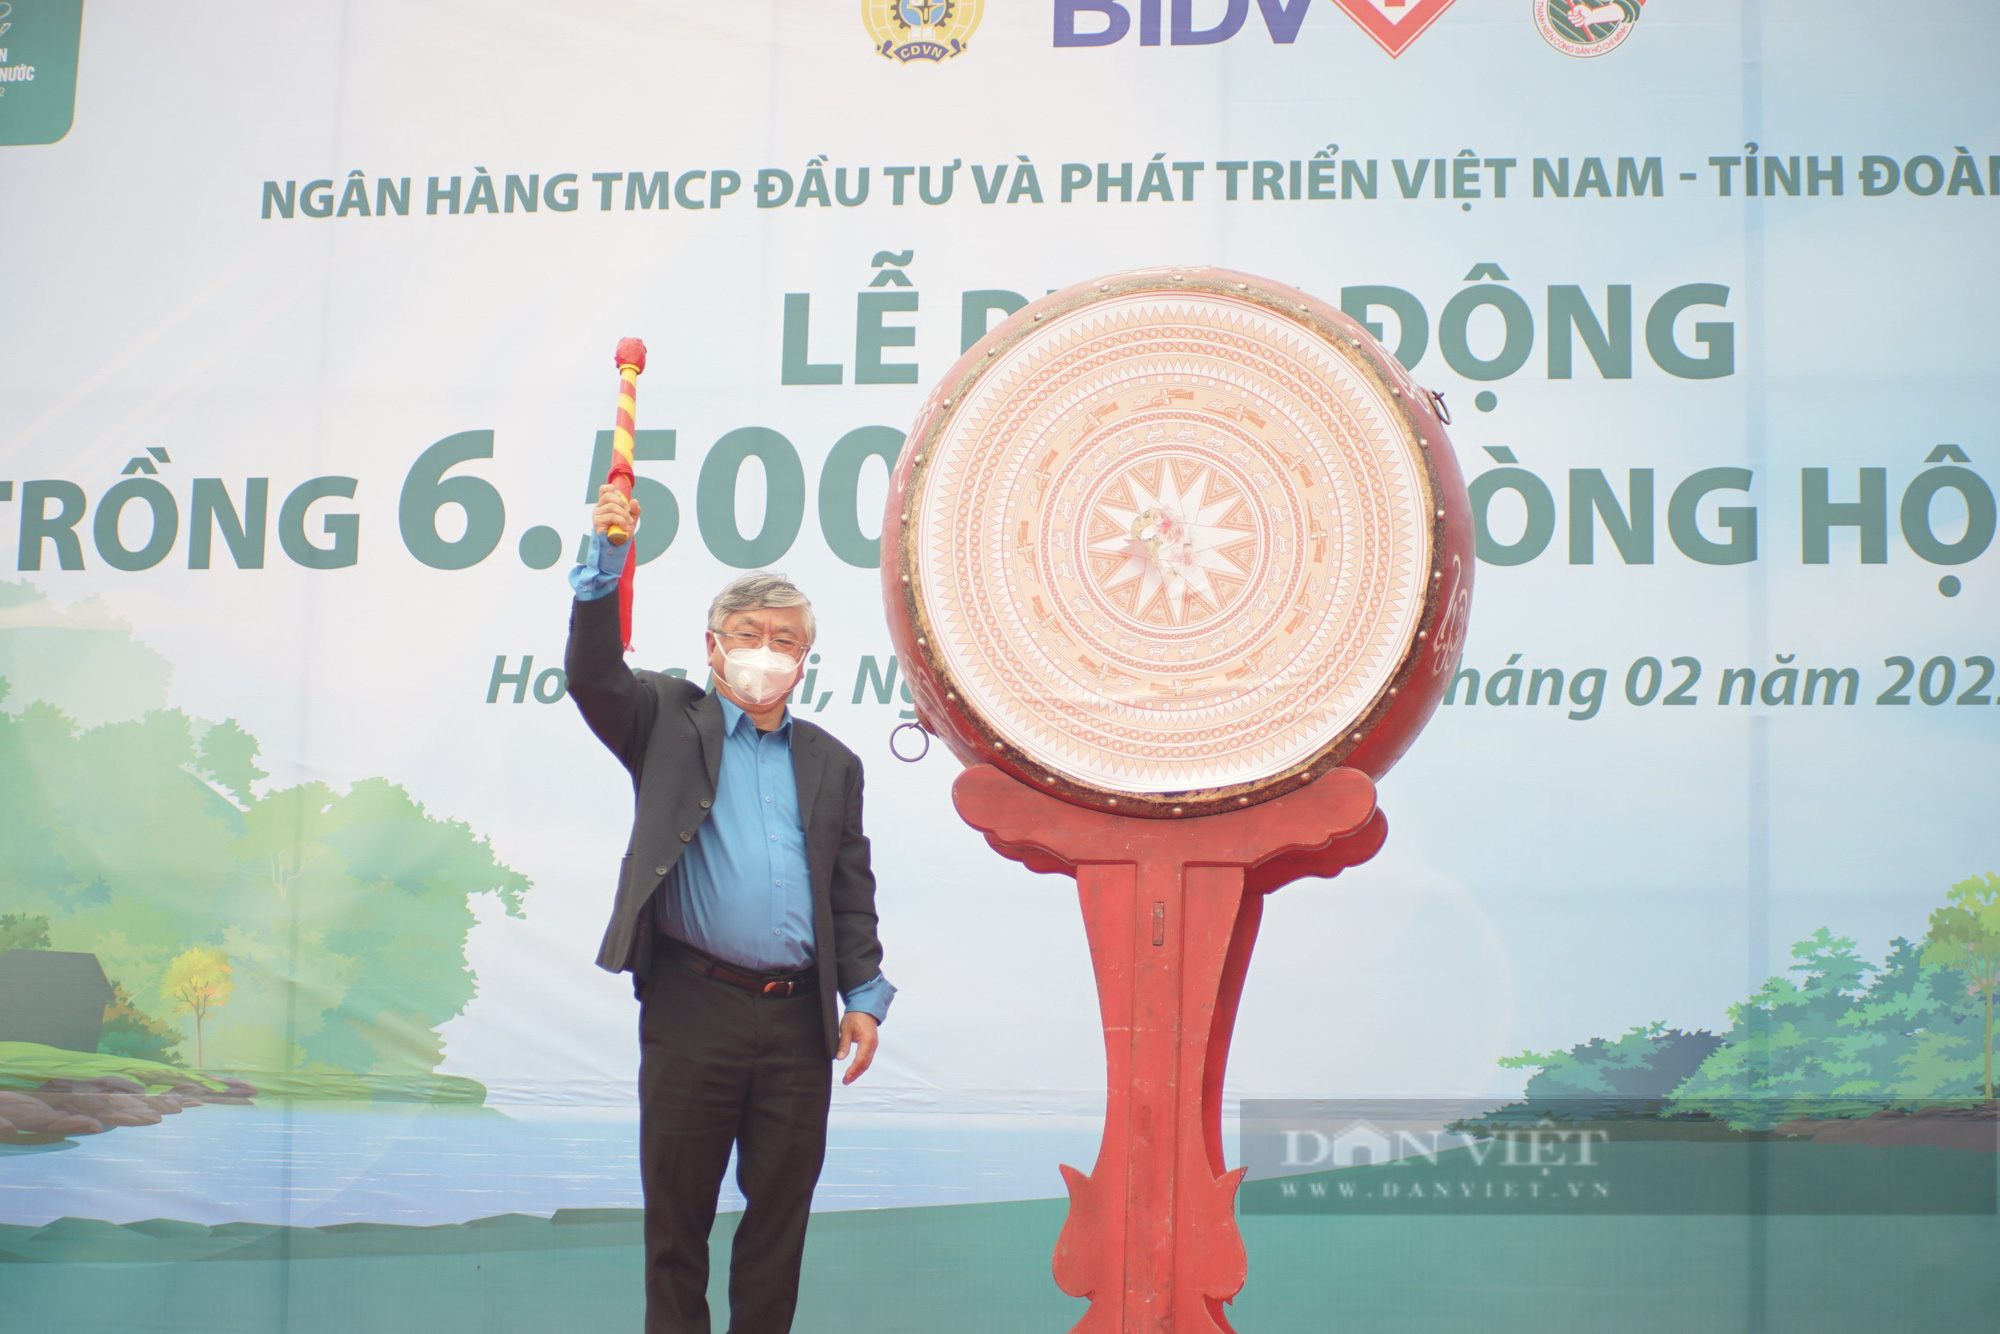 Ngân hàng BIDV trồng 6.500 cây xanh phòng hộ vùng ven biển tại Nghệ An - Ảnh 2.